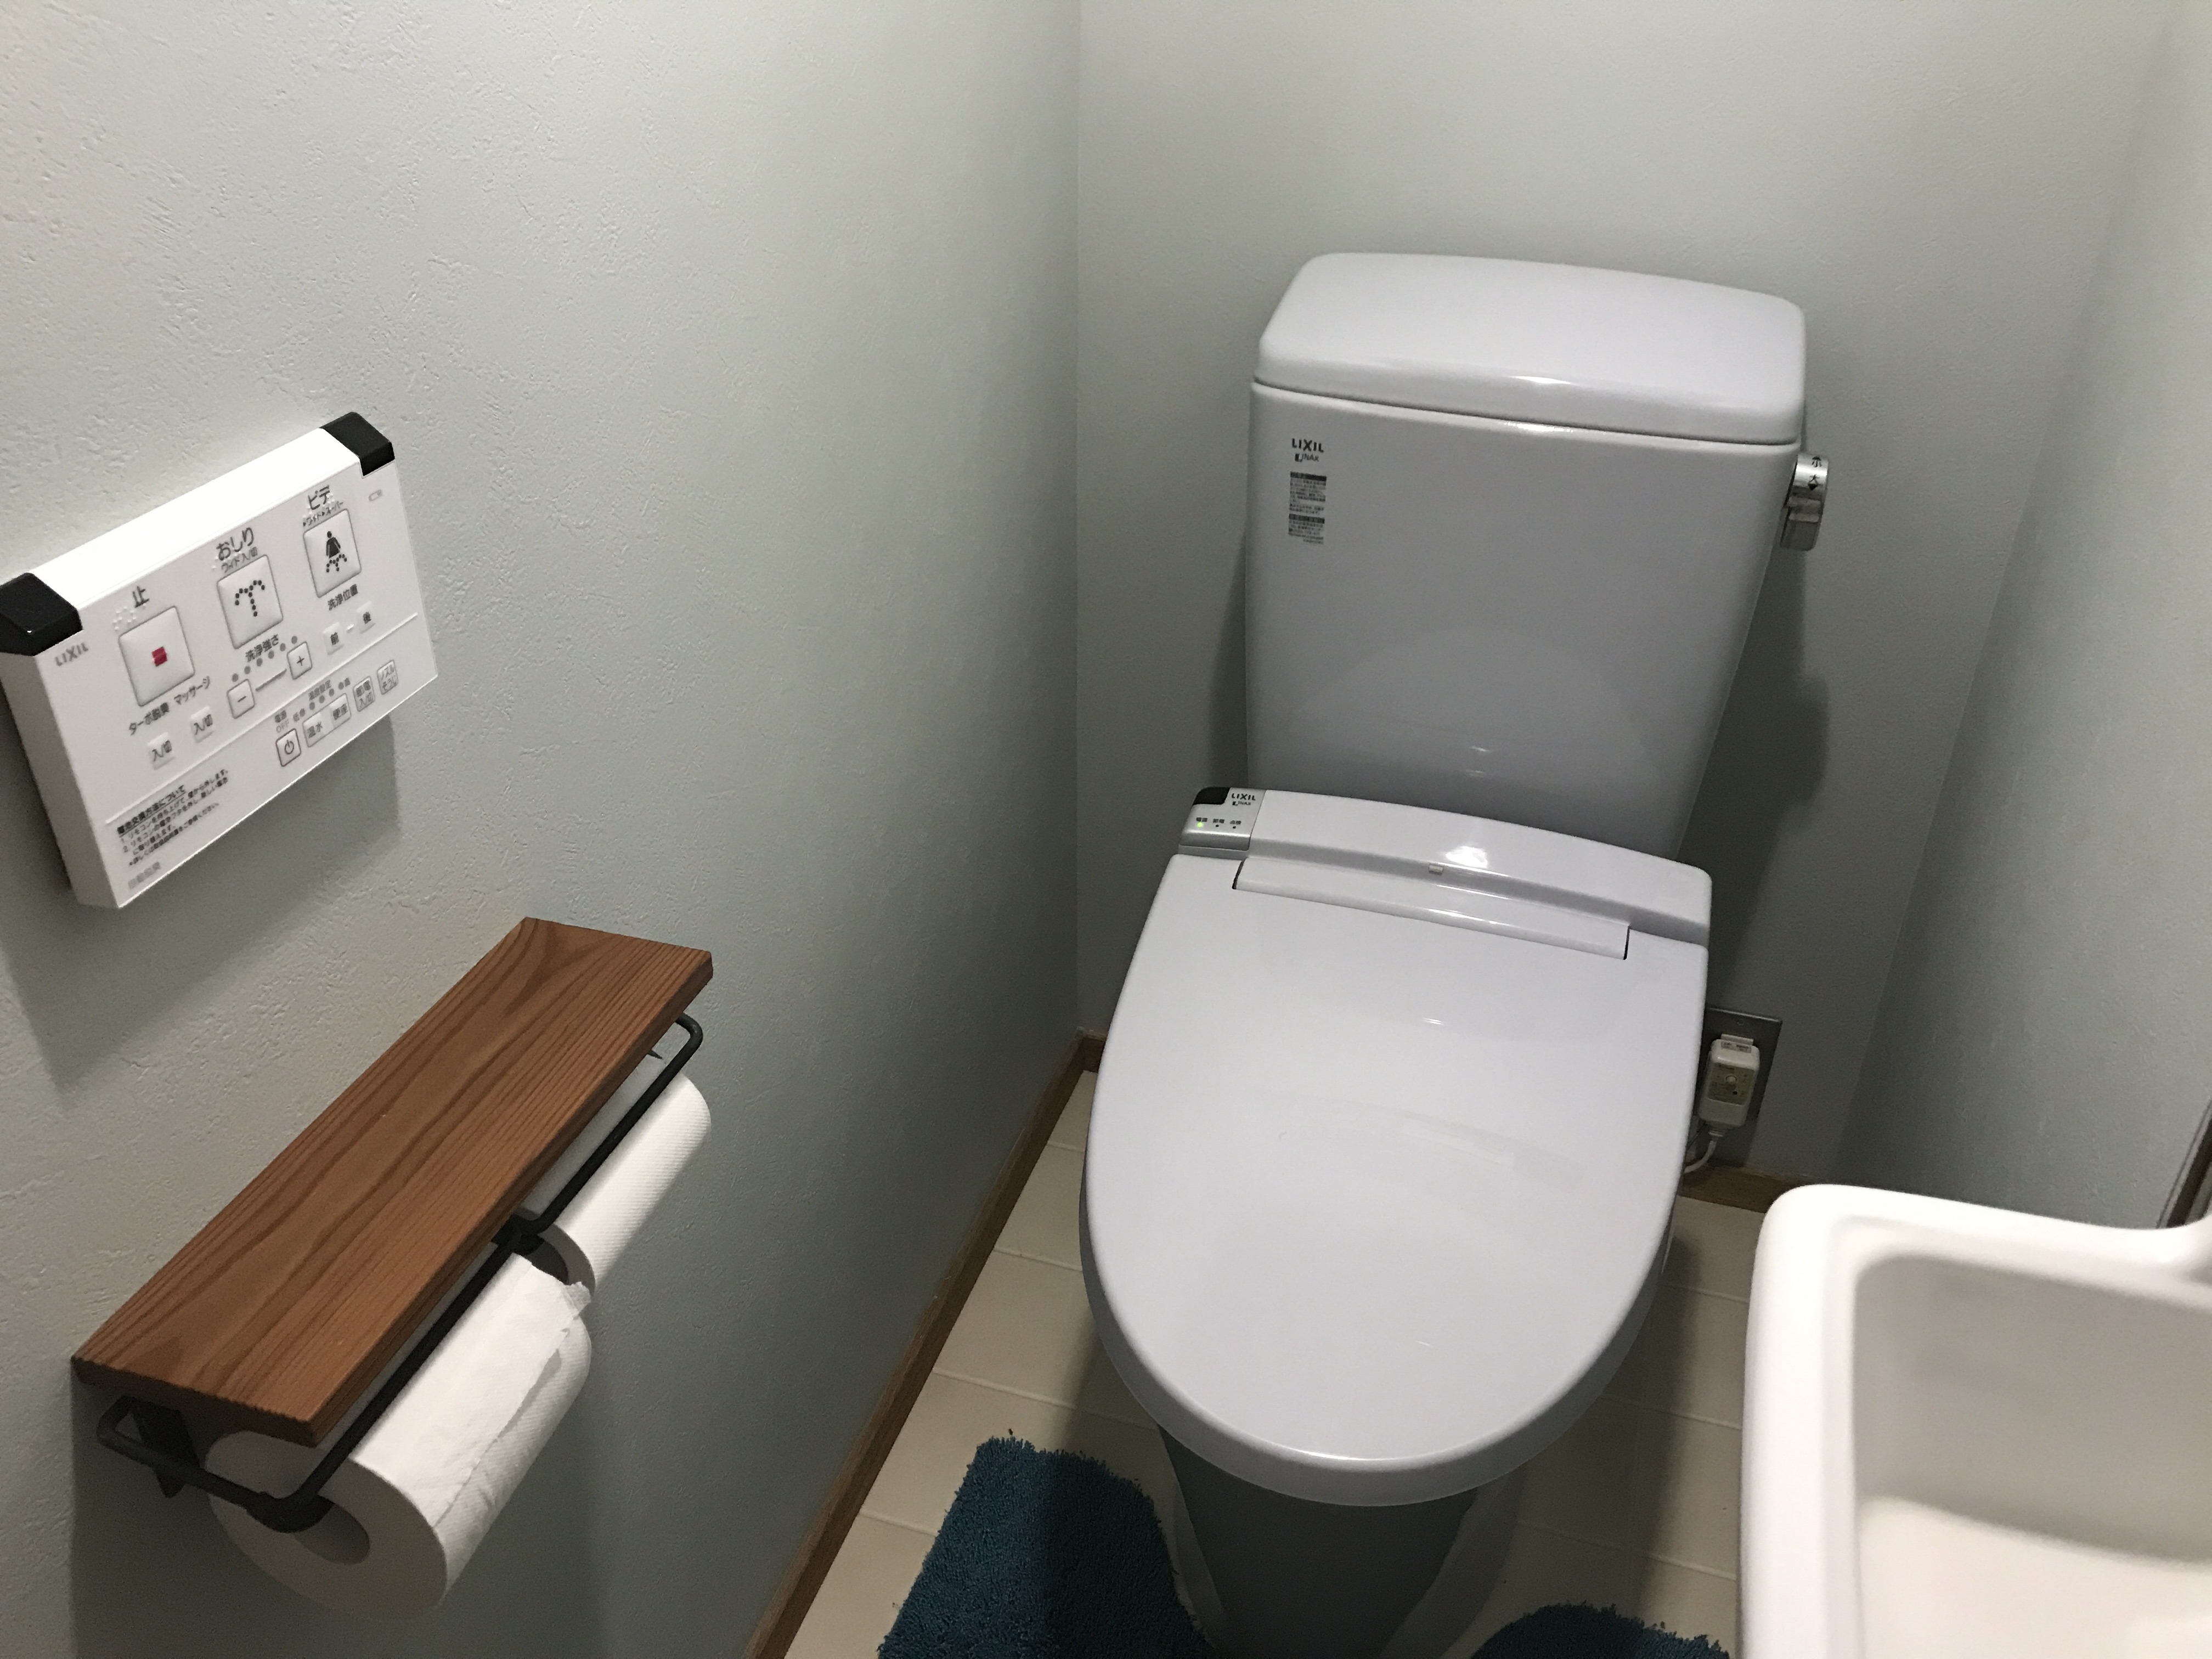 新築のトイレをおしゃれな空間にする方法 壁紙や照明などインテリアの選び方とは